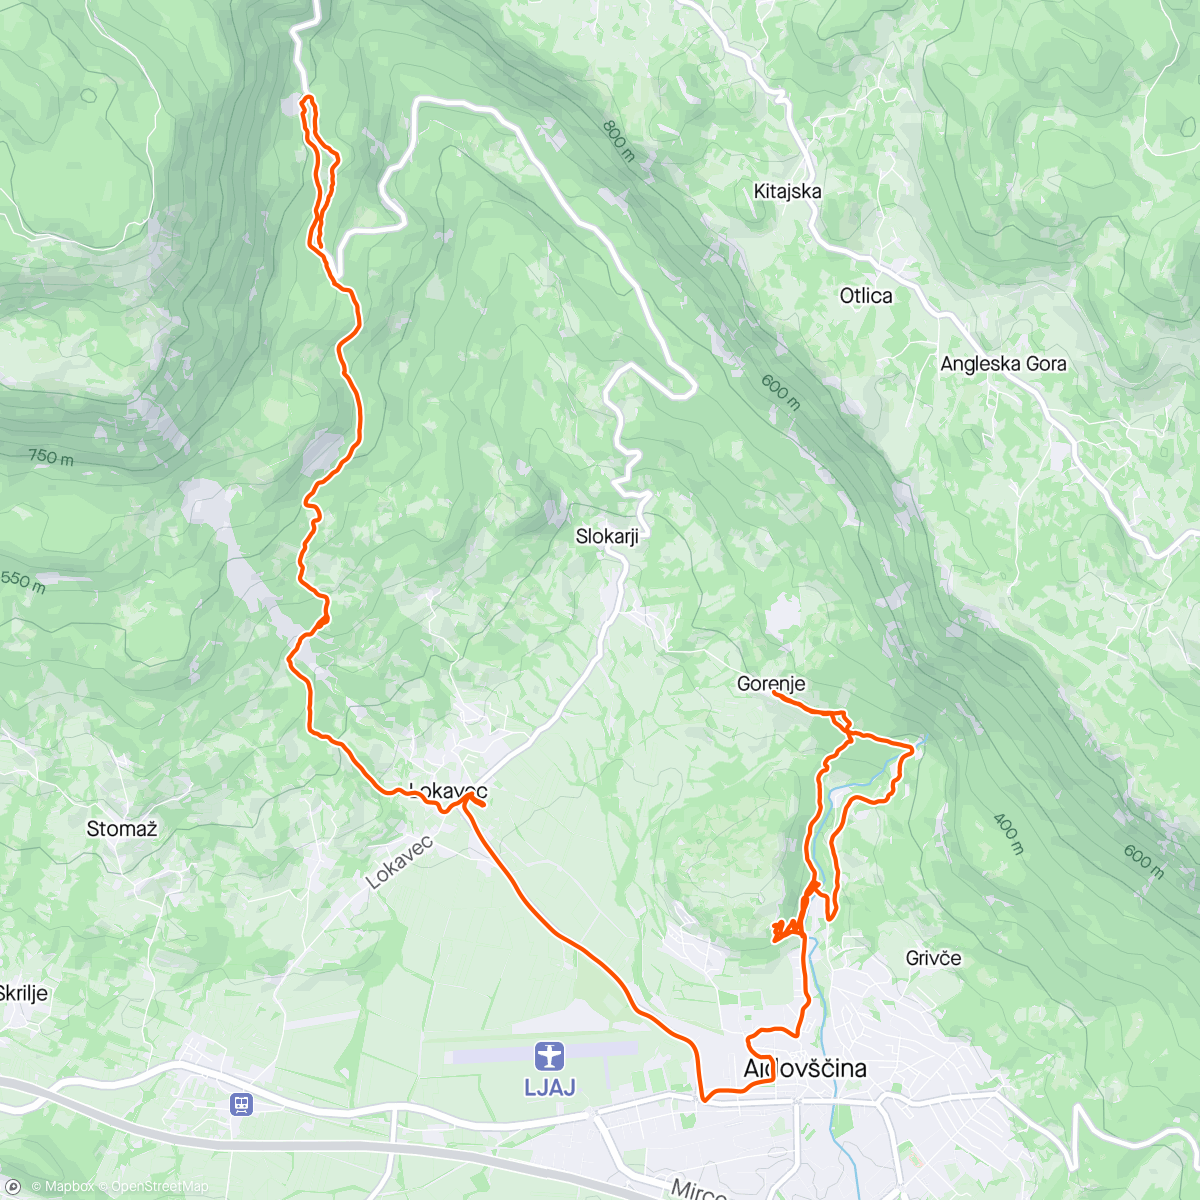 Map of the activity, Oggi trasferta in Slovenia a vedere dei trail nuovi…
In ottima compagnia di GIANCARL e David (piacevole scoperta)…
#orbea #unno #norco #mtb #enduro #trail #pump #pumptrack